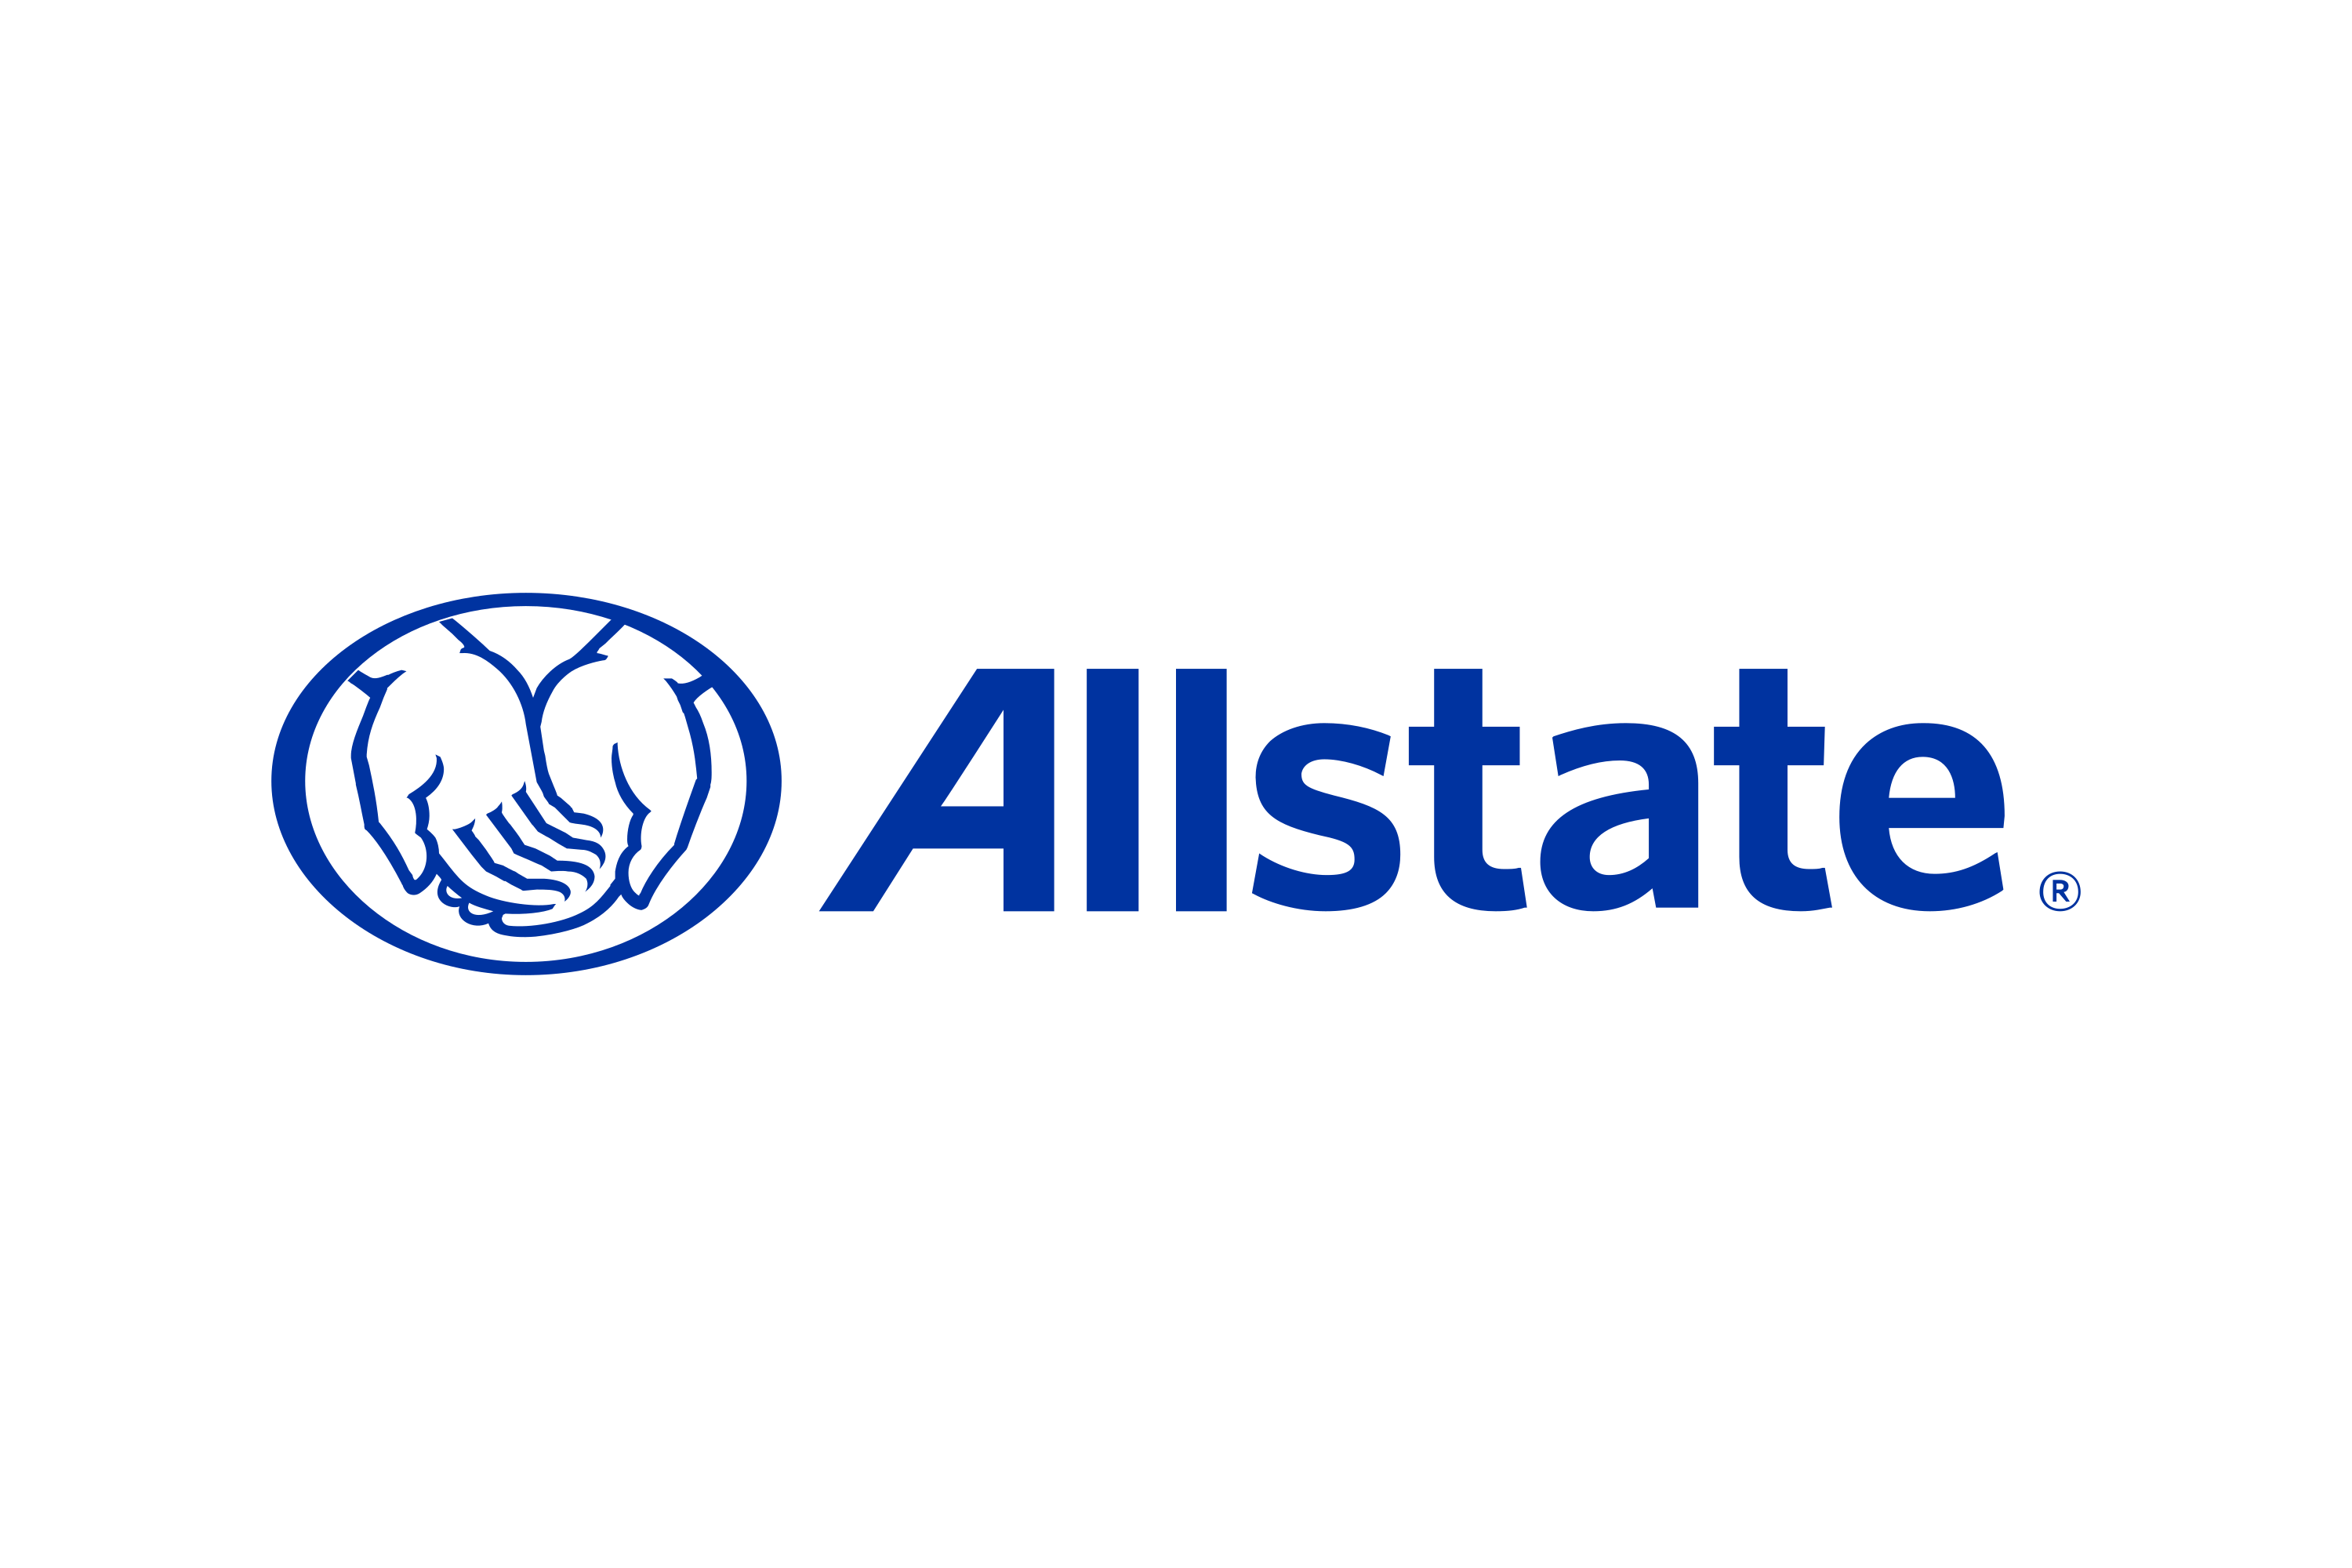 Download Allstate Logo in SVG Vector or PNG File Format - Logo.wine